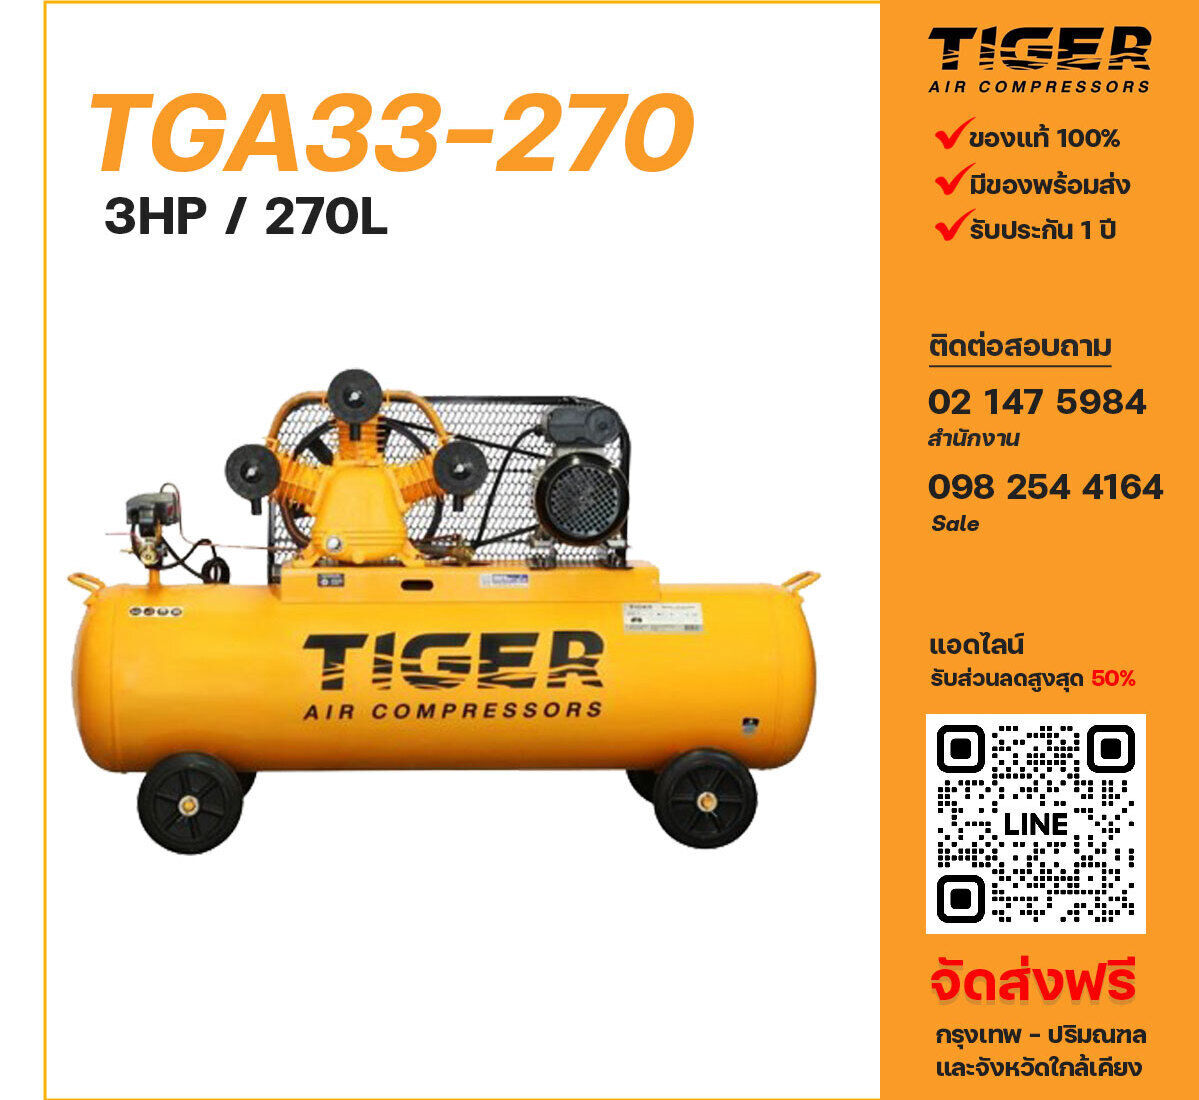 ปั๊มลมไทเกอร์ TIGER TGA33-270 ปั๊มลมลูกสูบ ขนาด 3 สูบ 3 แรงม้า 270 ลิตร TIGER พร้อมมอเตอร์ ไฟ 220V ส่งฟรี กรุงเทพฯ-ปริมณฑล รับประกัน 1 ปี